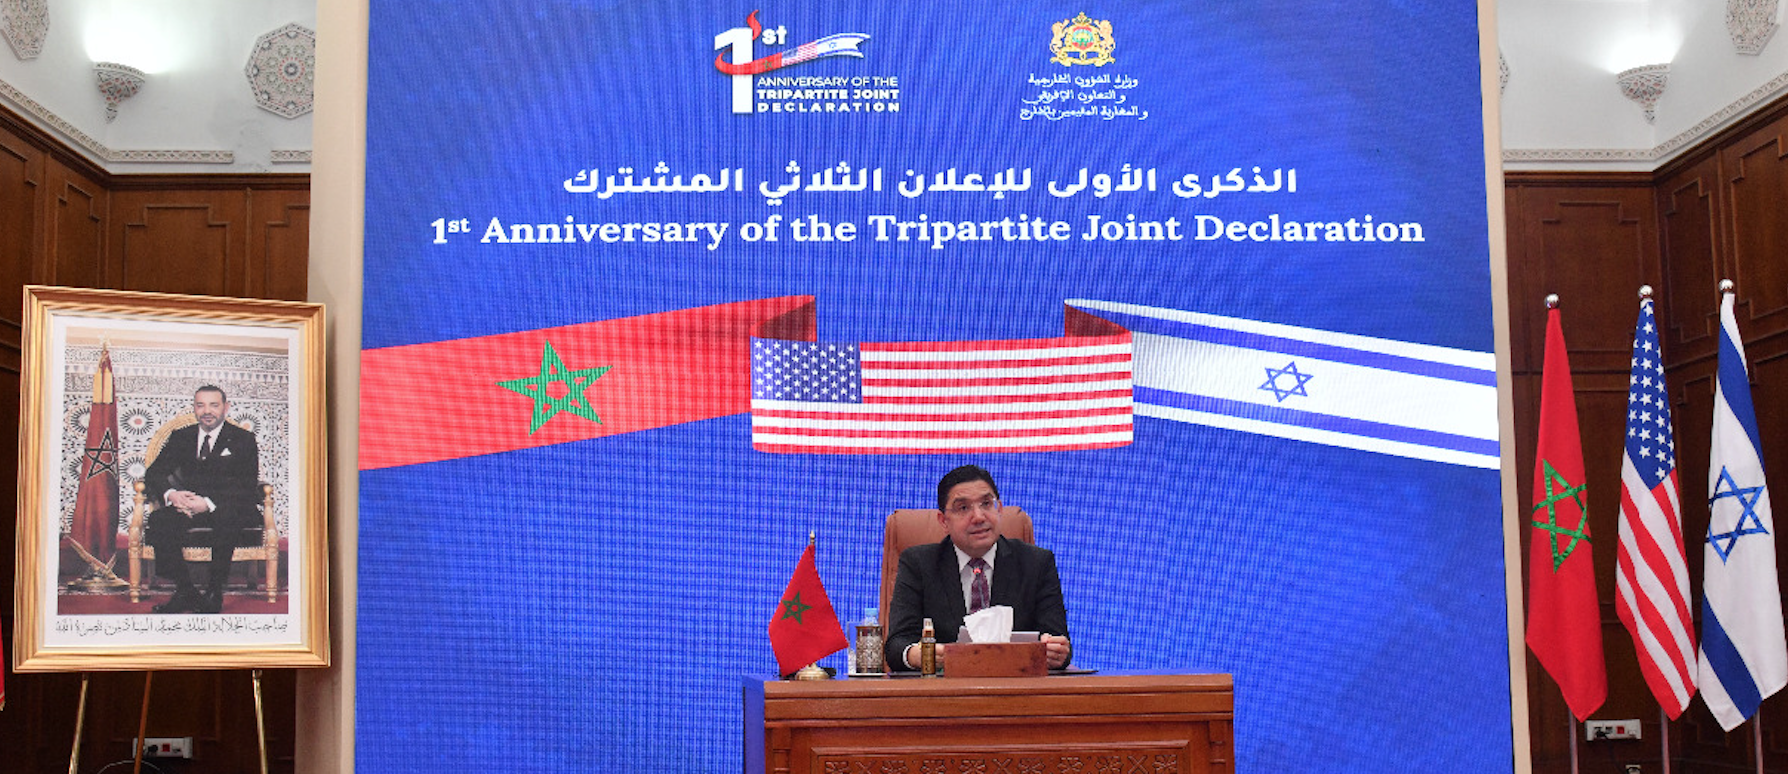 Célébration à Rabat du premier anniversaire de l’Accord tripartite Maroc-USA-Israël